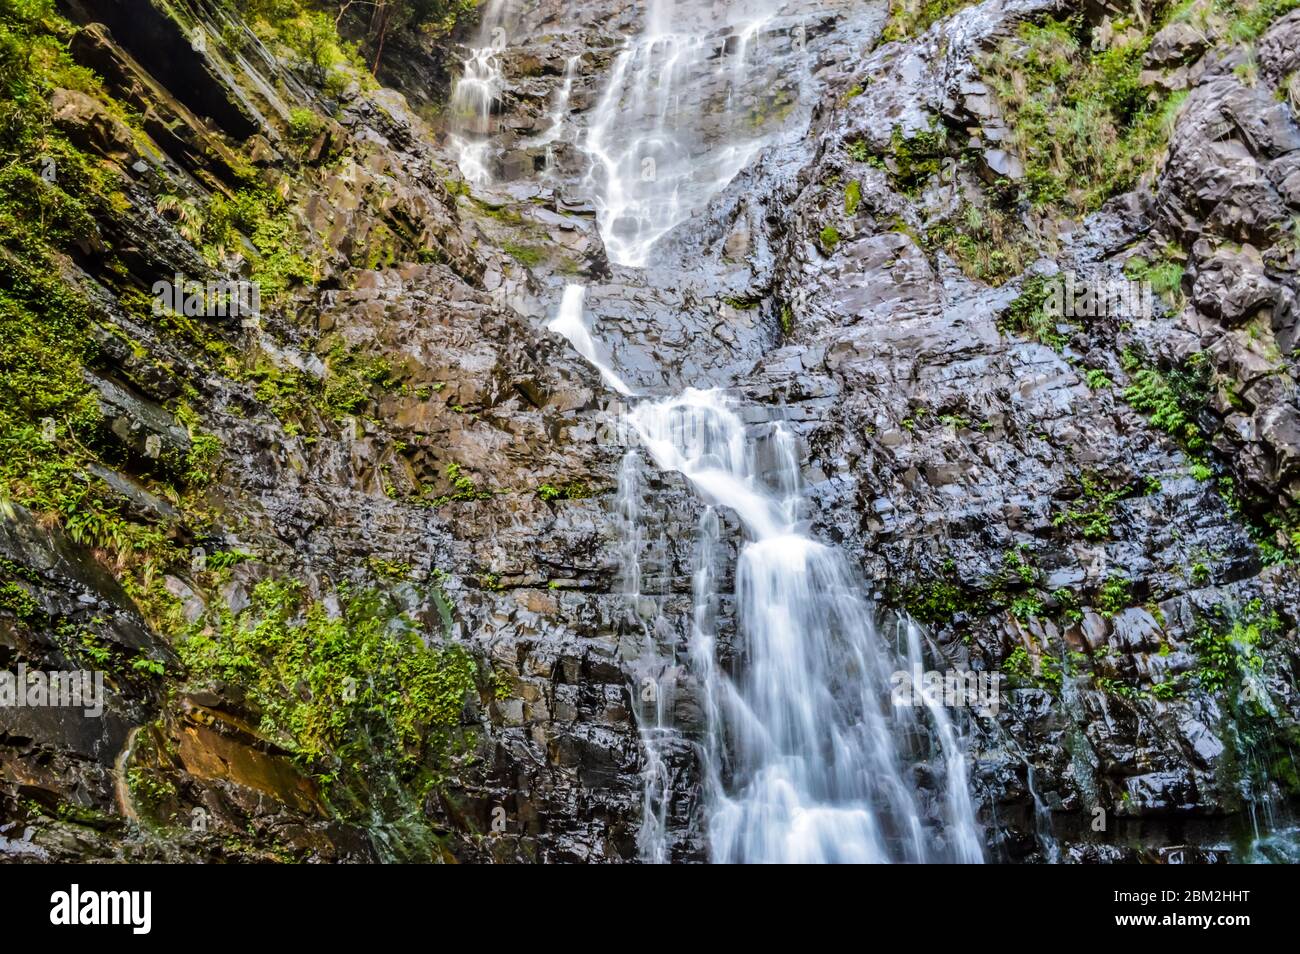 Der Temurun Wasserfall in Malaysia - Forest Park mit einem 3-stufigen Wasserfall mit flachen und tiefen Pools. Berühmte & schöne Natur in Kedah Malaysia. Stockfoto